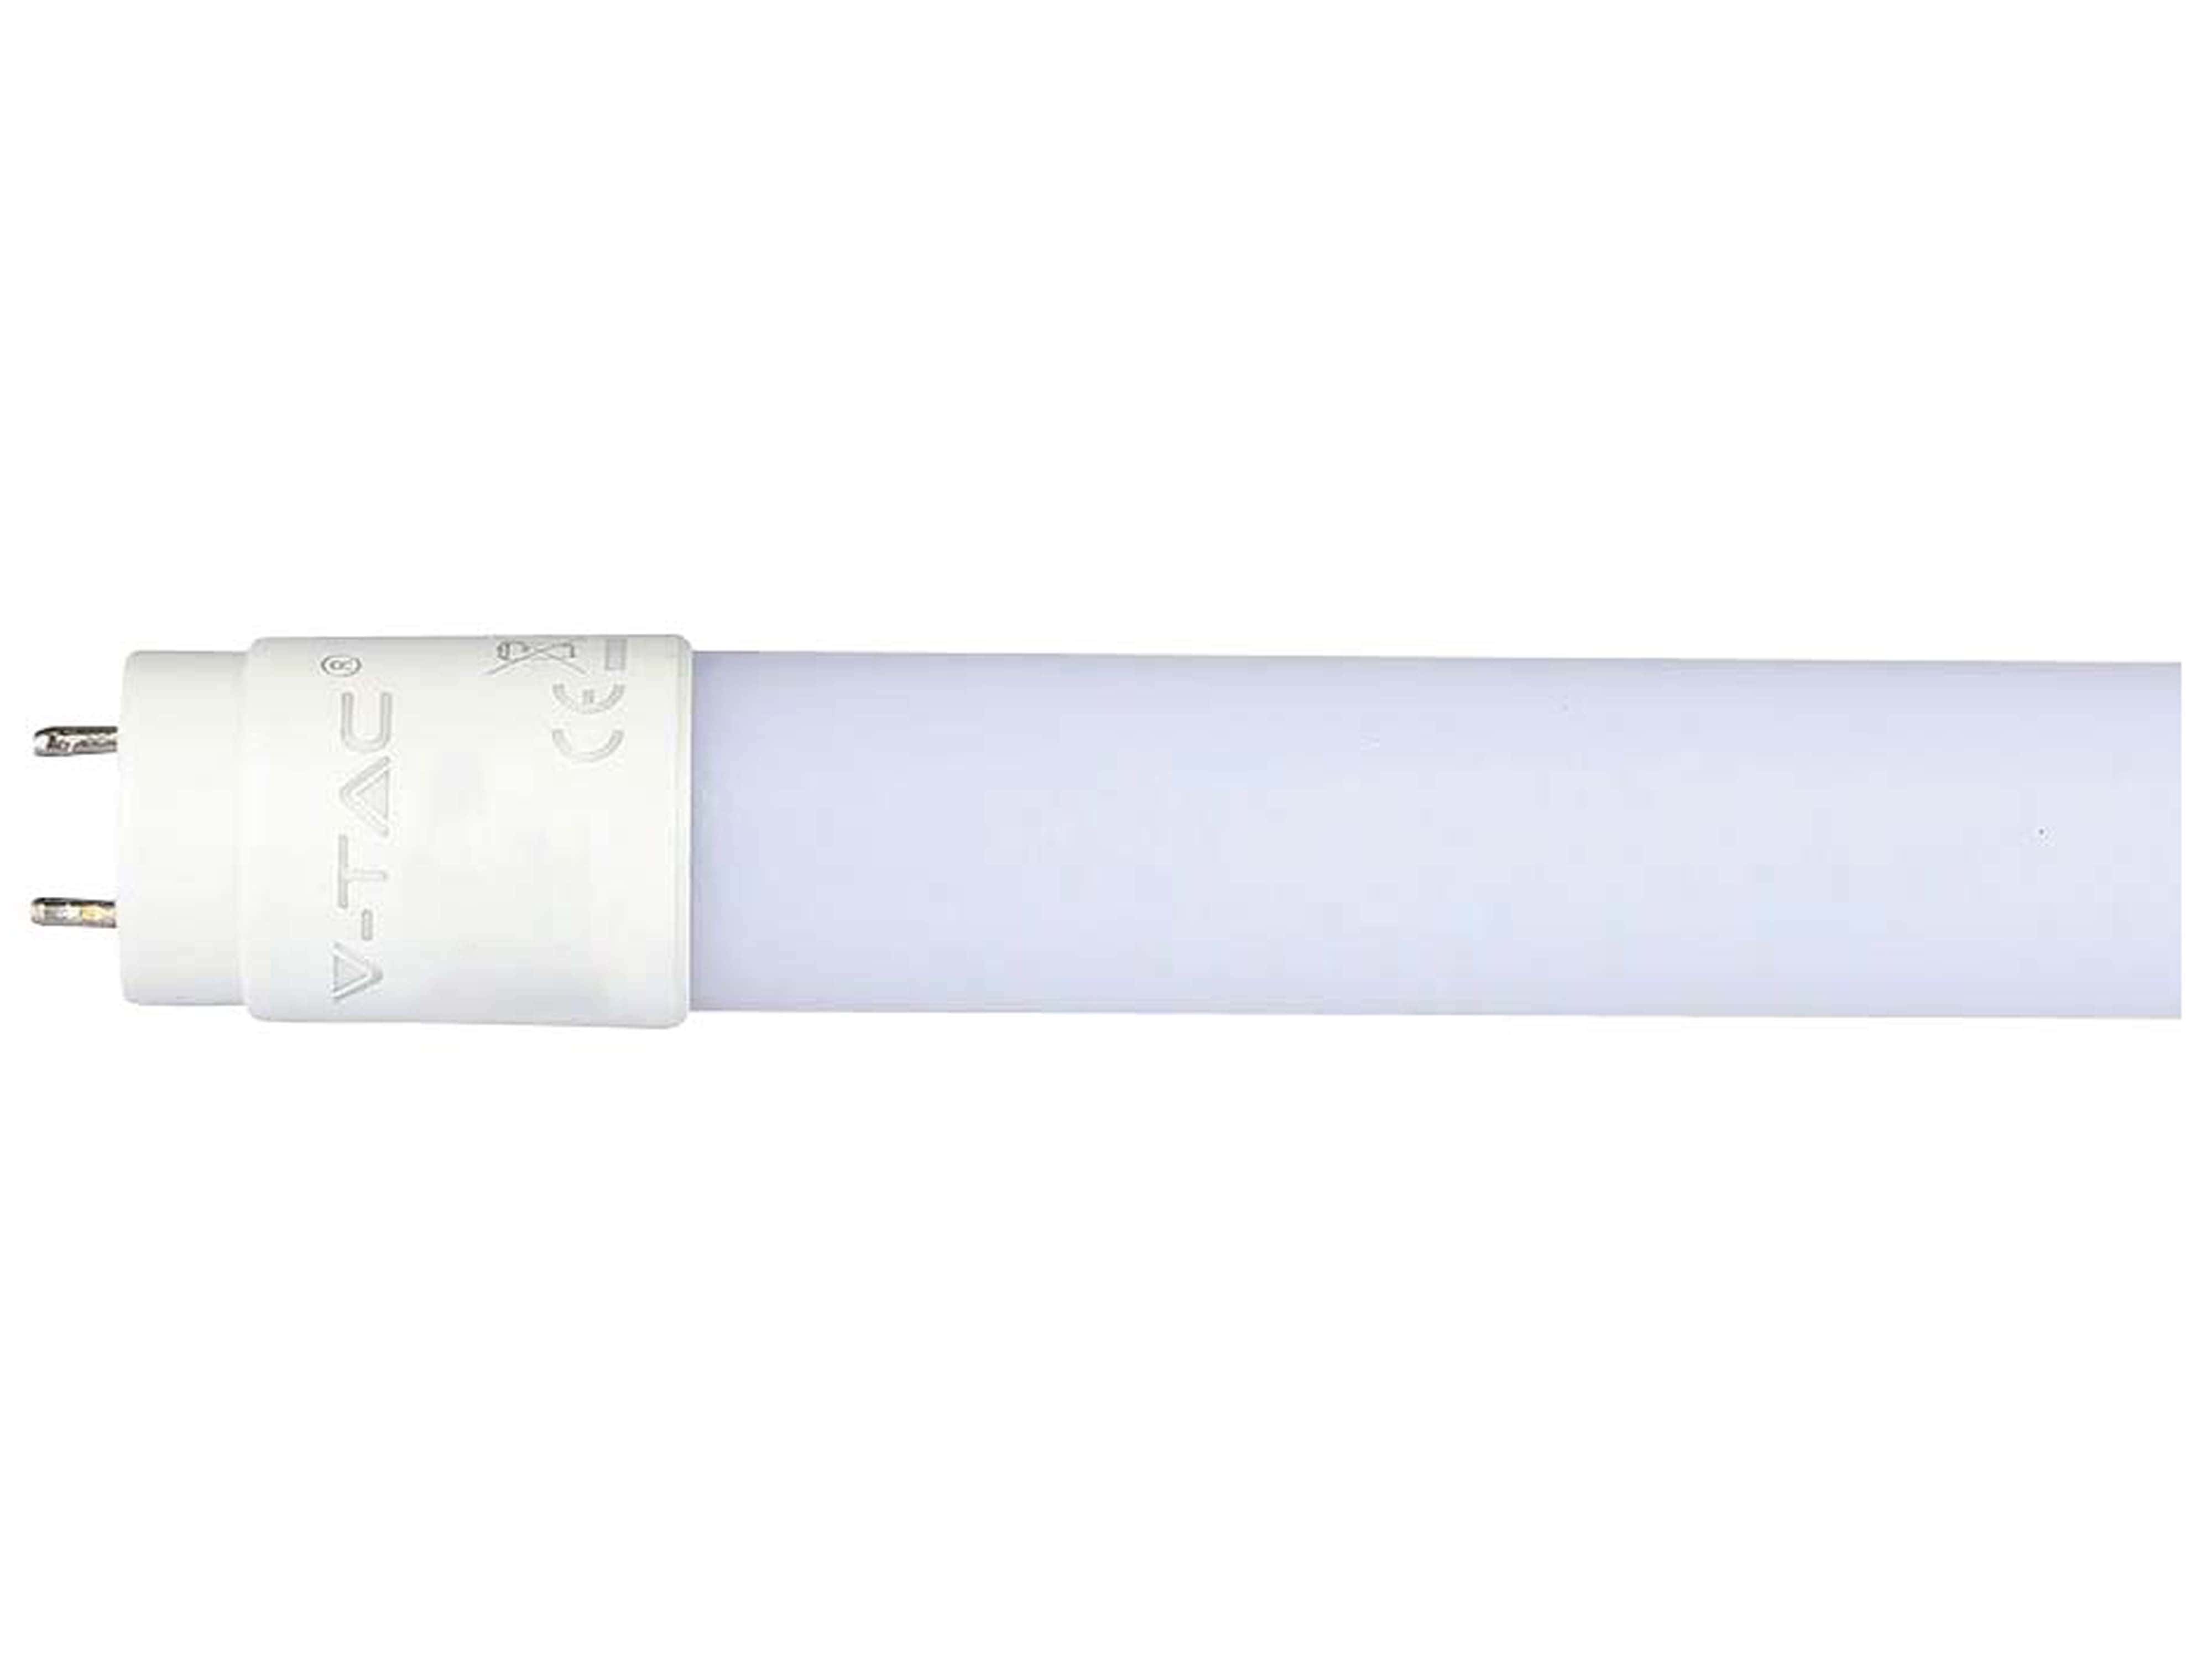 V-TAC LED-Röhre HIGH LUMEN, EEK: E, 16,5 W, 1850 lm, G13, 4000 K, 120 cm, 4 Stück